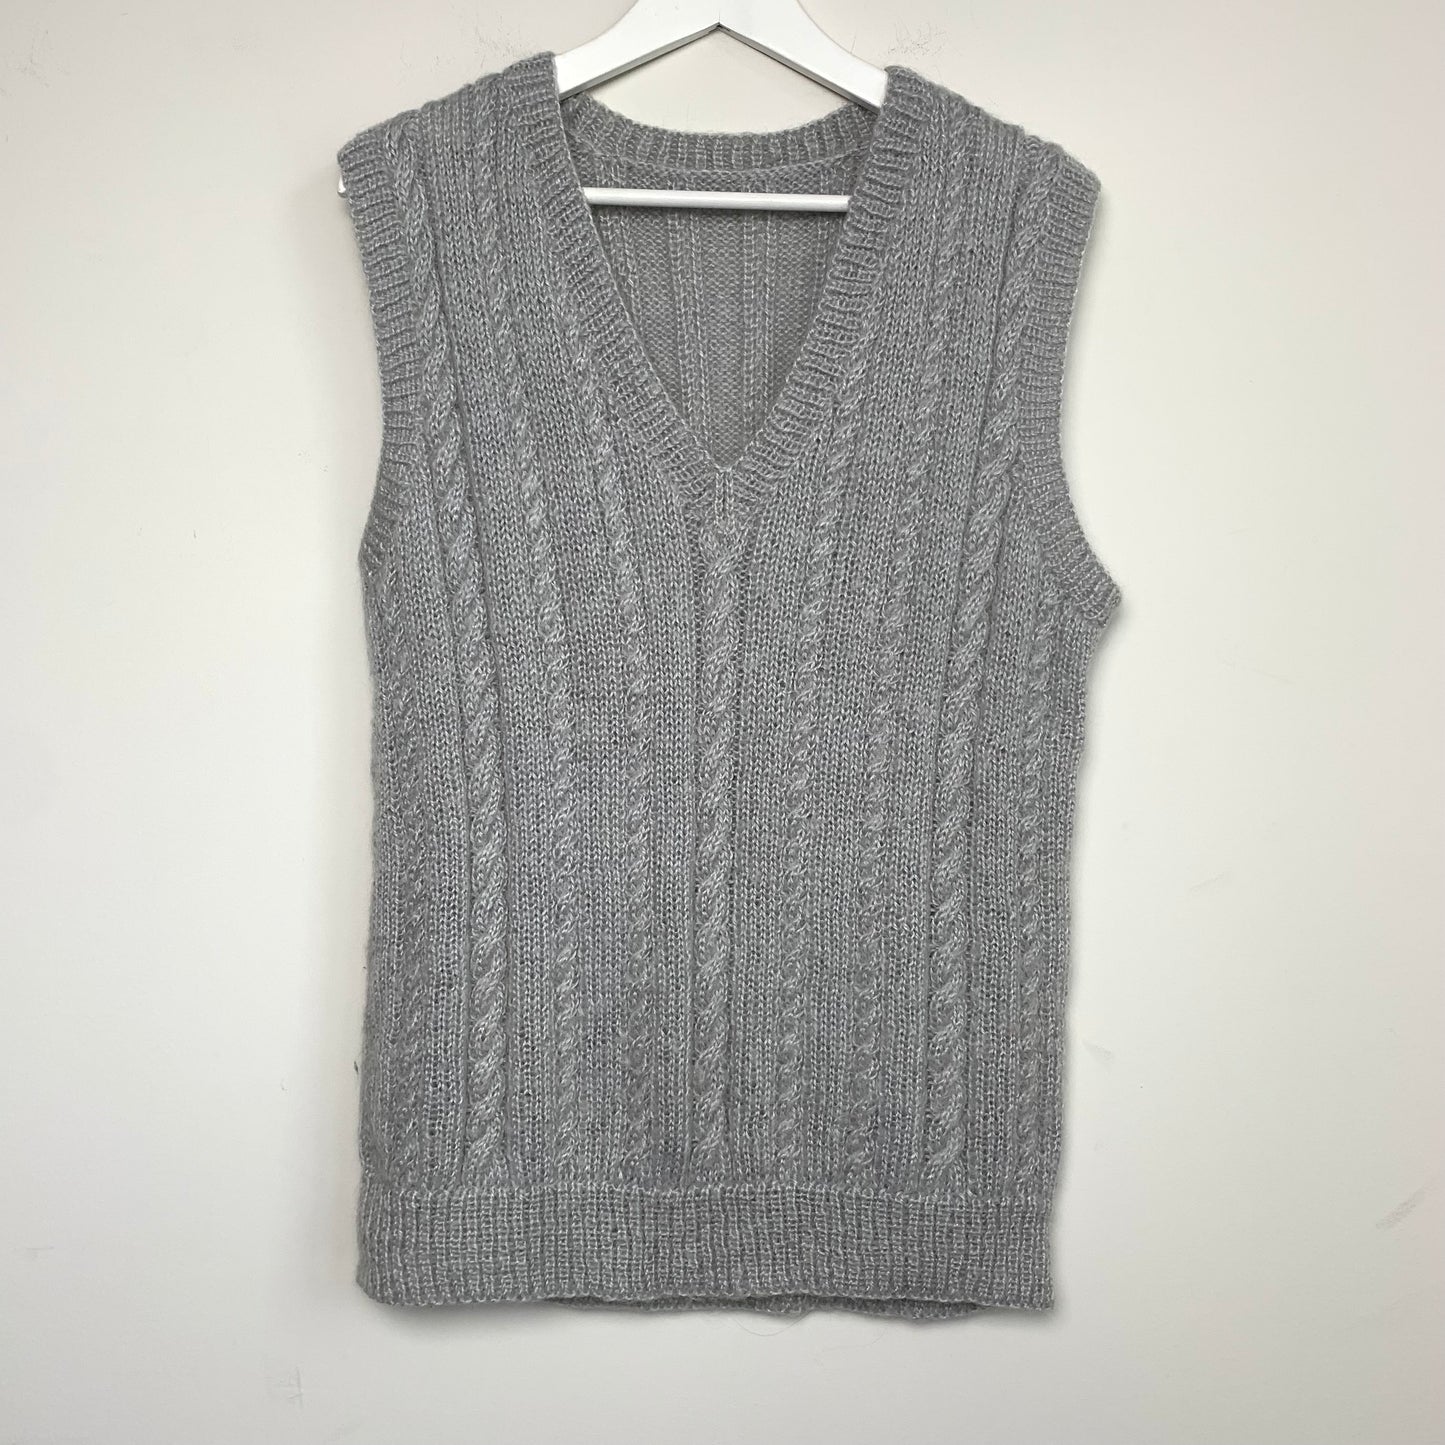 Chunky Knit Gray Sweater Vest Oversized Fisherman Knit